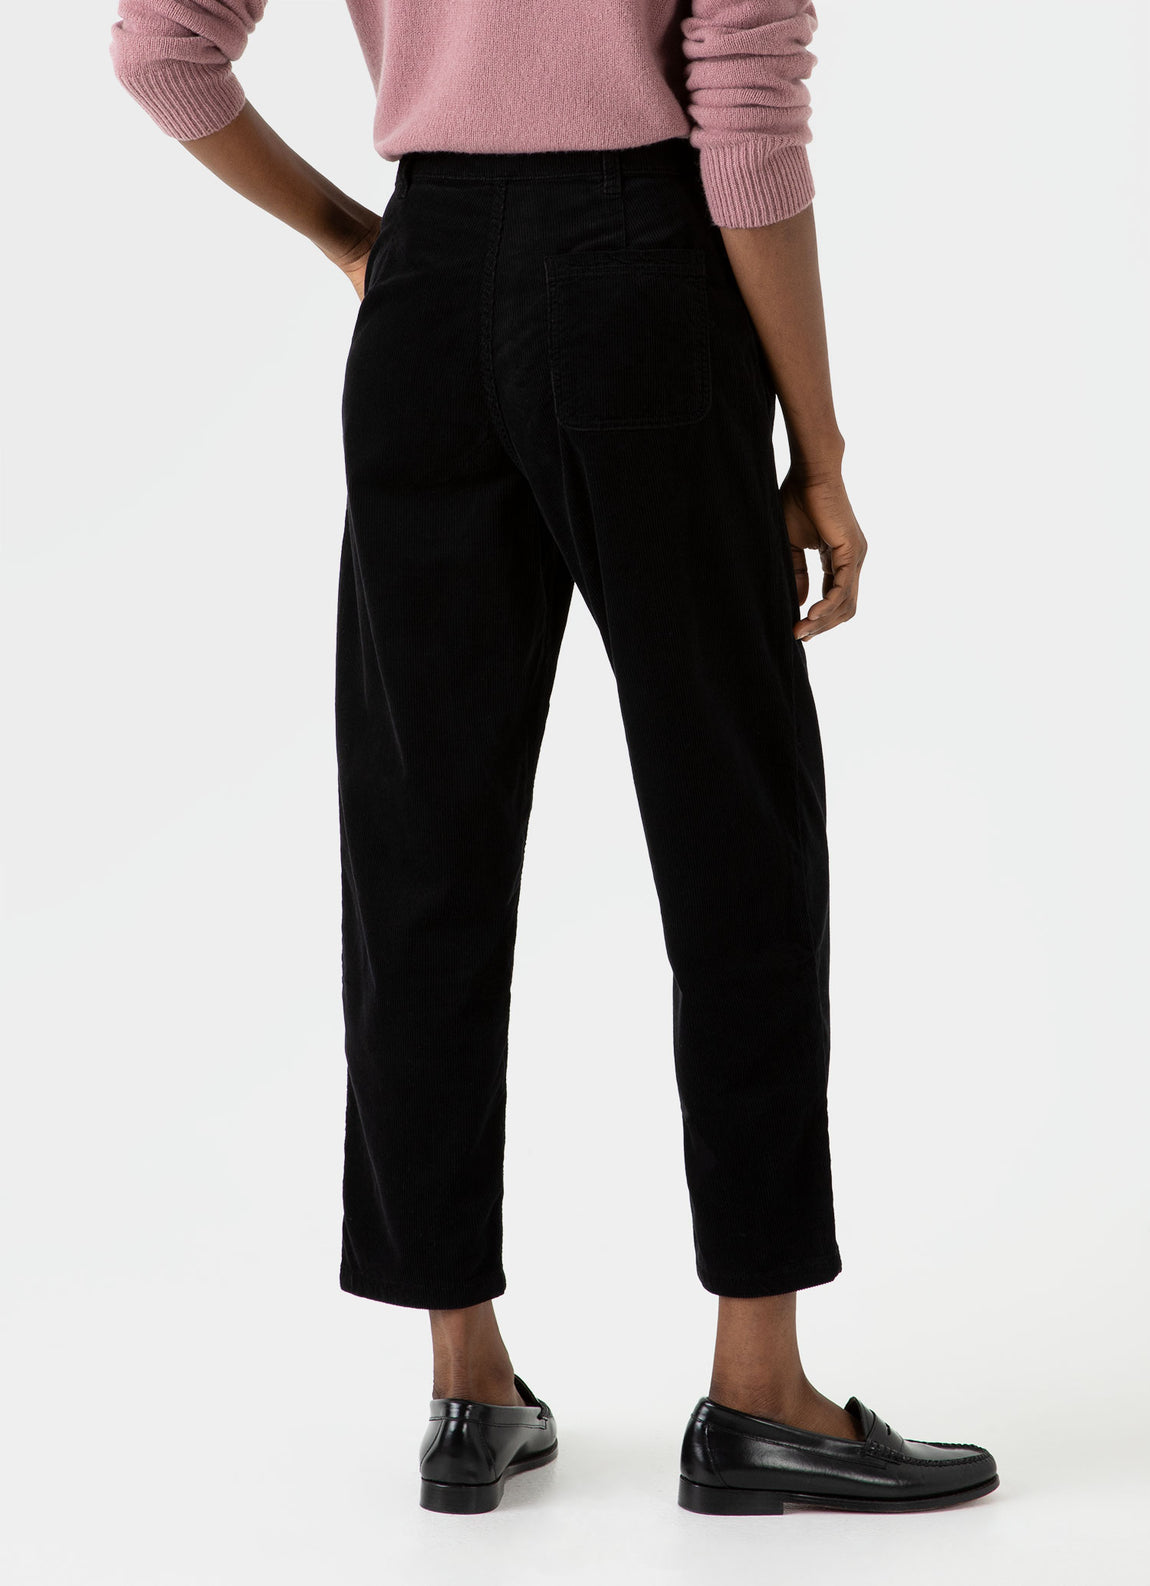 Women's Corduroy Trouser in Black | Sunspel